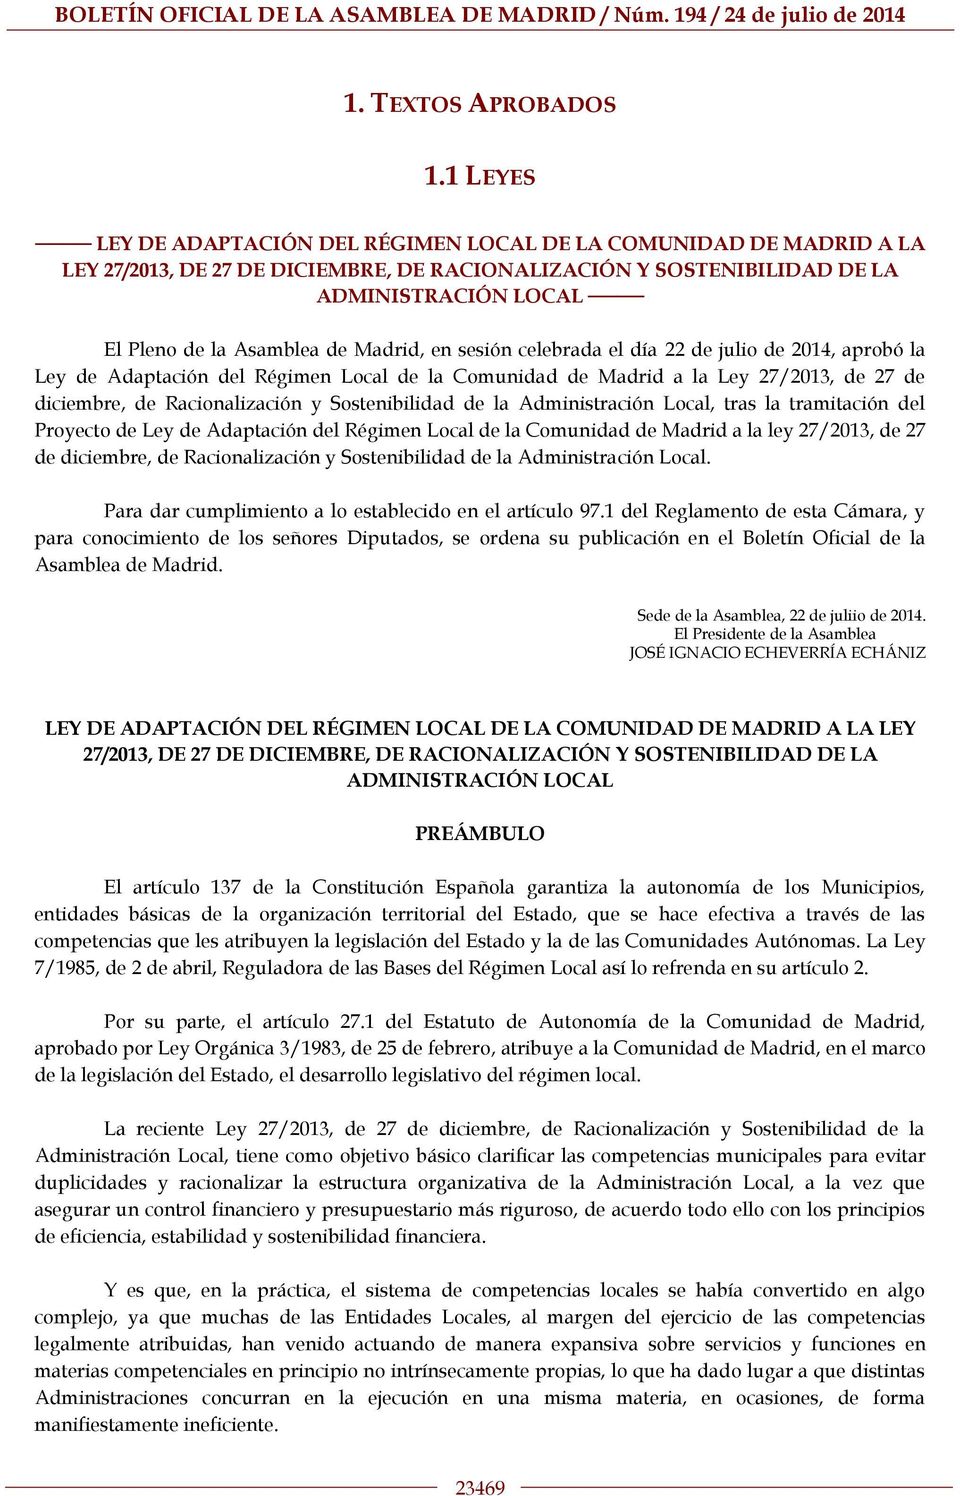 Madrid, en sesión celebrada el día 22 de julio de 2014, aprobó la Ley de Adaptación del Régimen Local de la Comunidad de Madrid a la Ley 27/2013, de 27 de diciembre, de Racionalización y